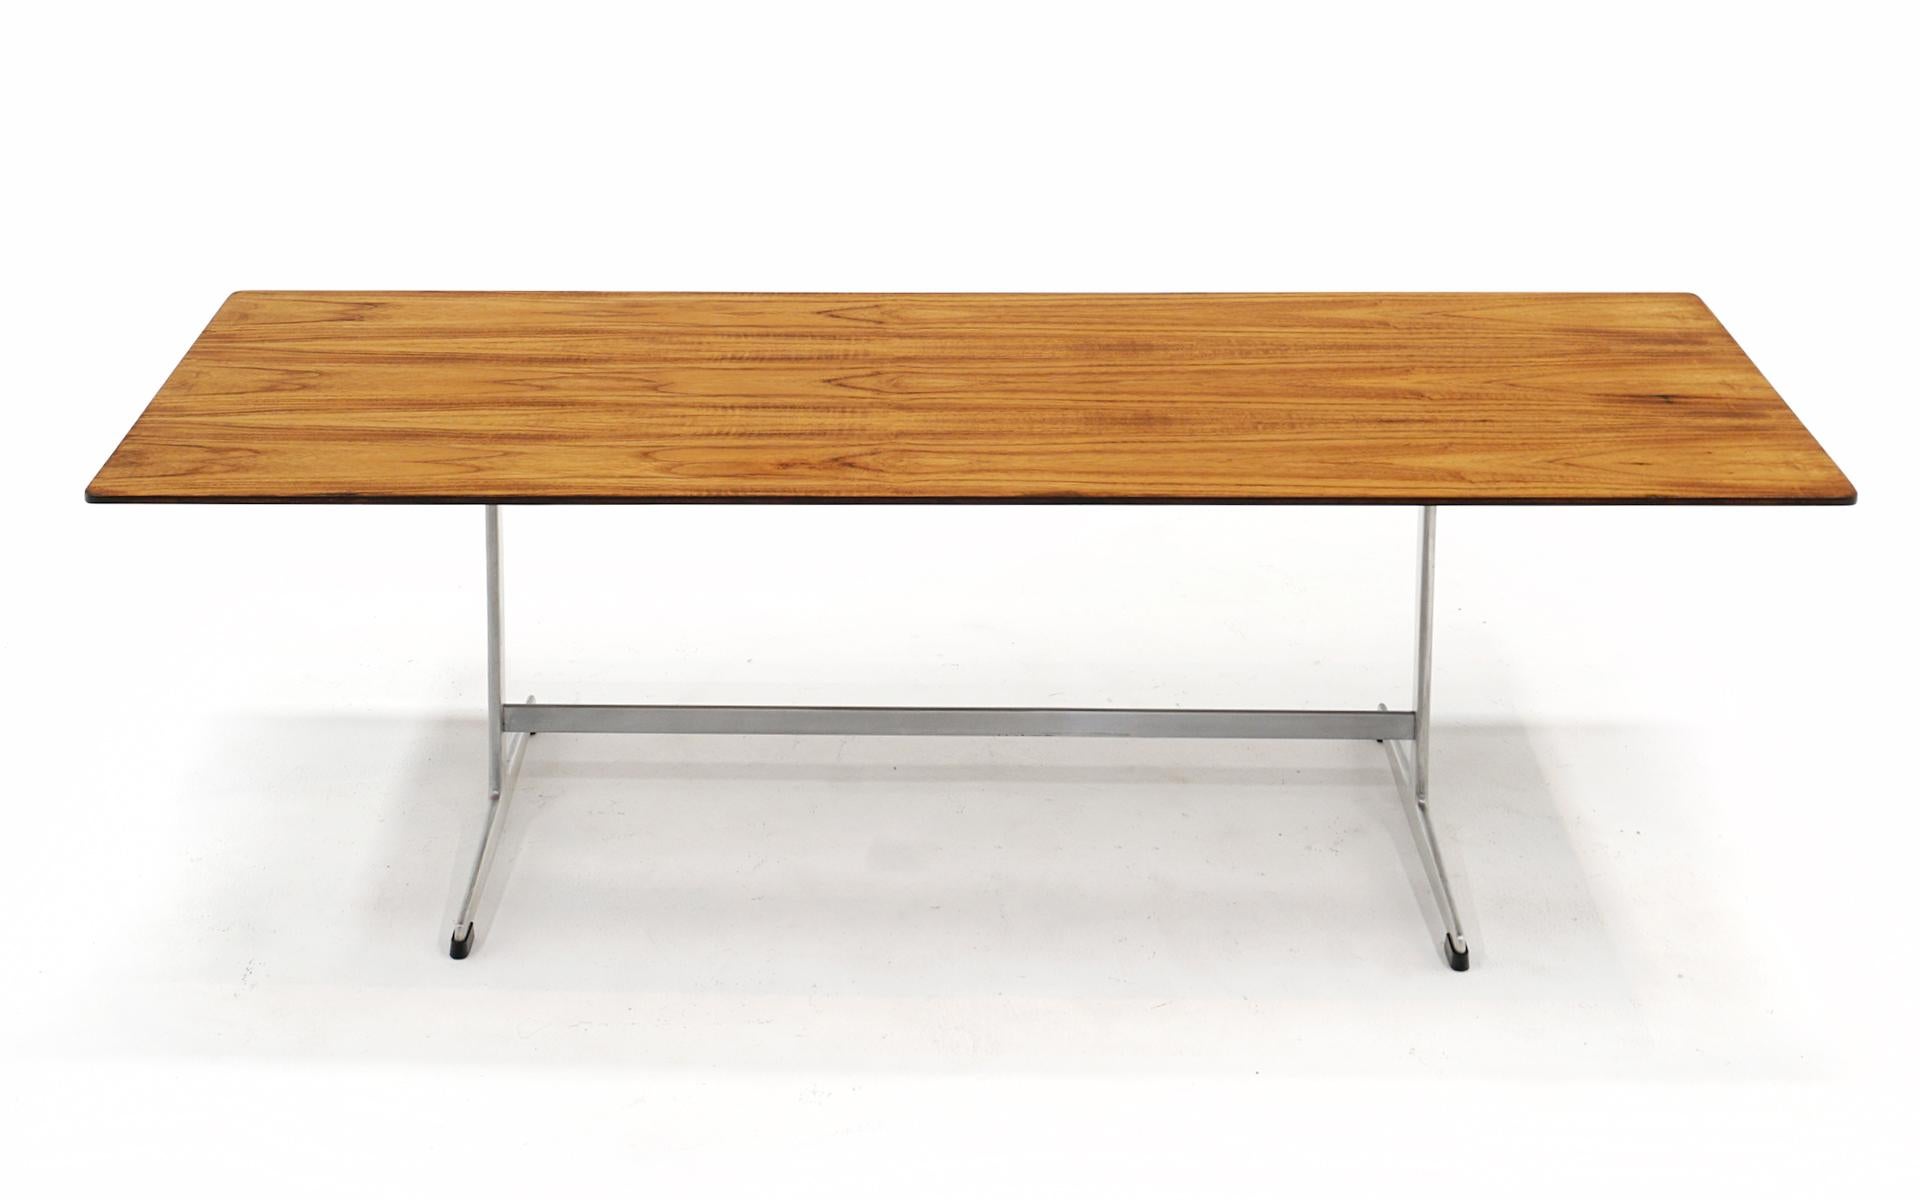 Arne Jacobsen Couchtisch mit Platte aus brasilianischem Palisanderholz und Aluminiumfuß. Schöne Maserung im Palisanderholz. Sehr guter Zustand mit sehr wenigen Gebrauchsspuren.